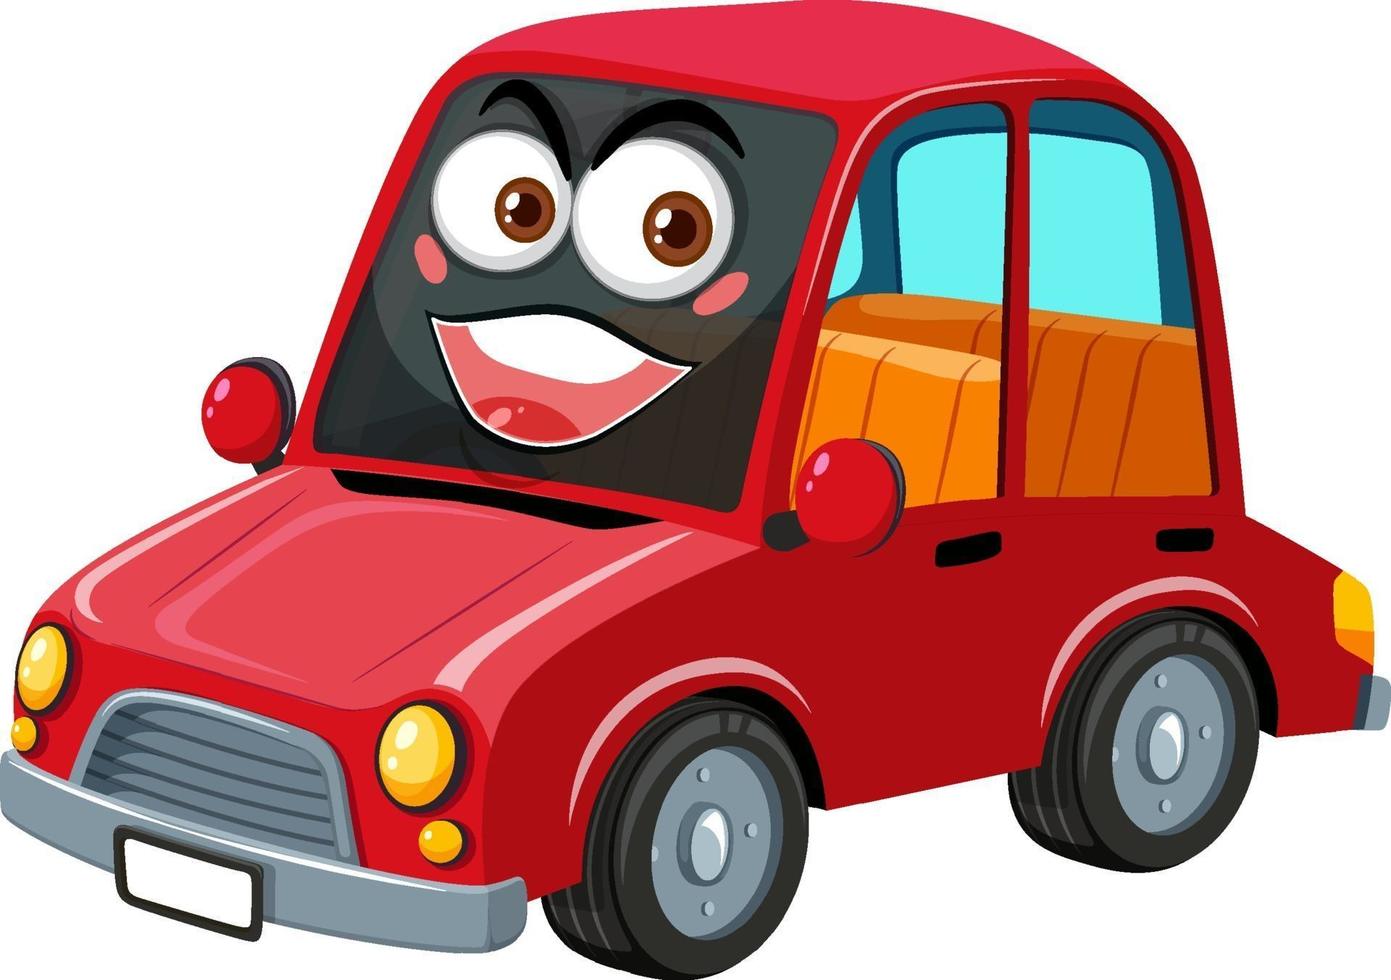 Personnage de dessin animé de voiture vintage rouge avec expression de visage heureux sur fond blanc vecteur